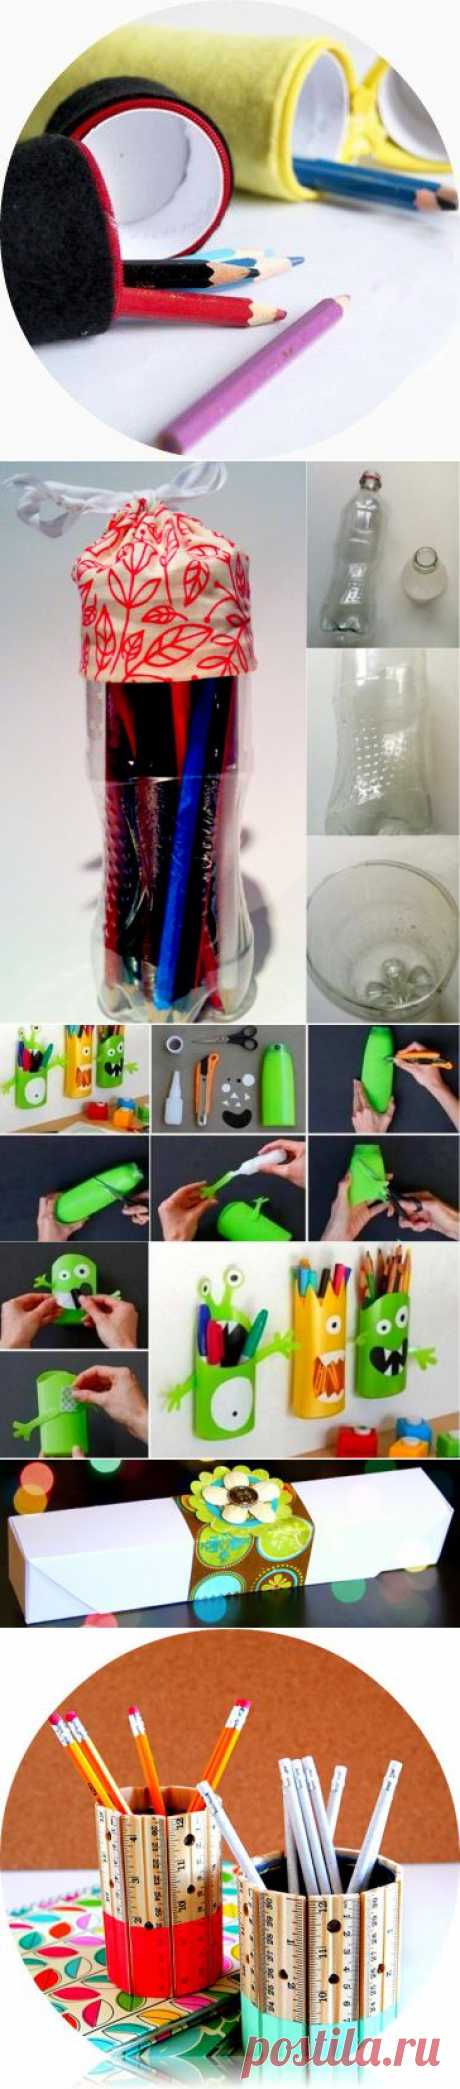 Как сделать пенал Поделка пенал из пластиковой бутылки | Идеи для творчества